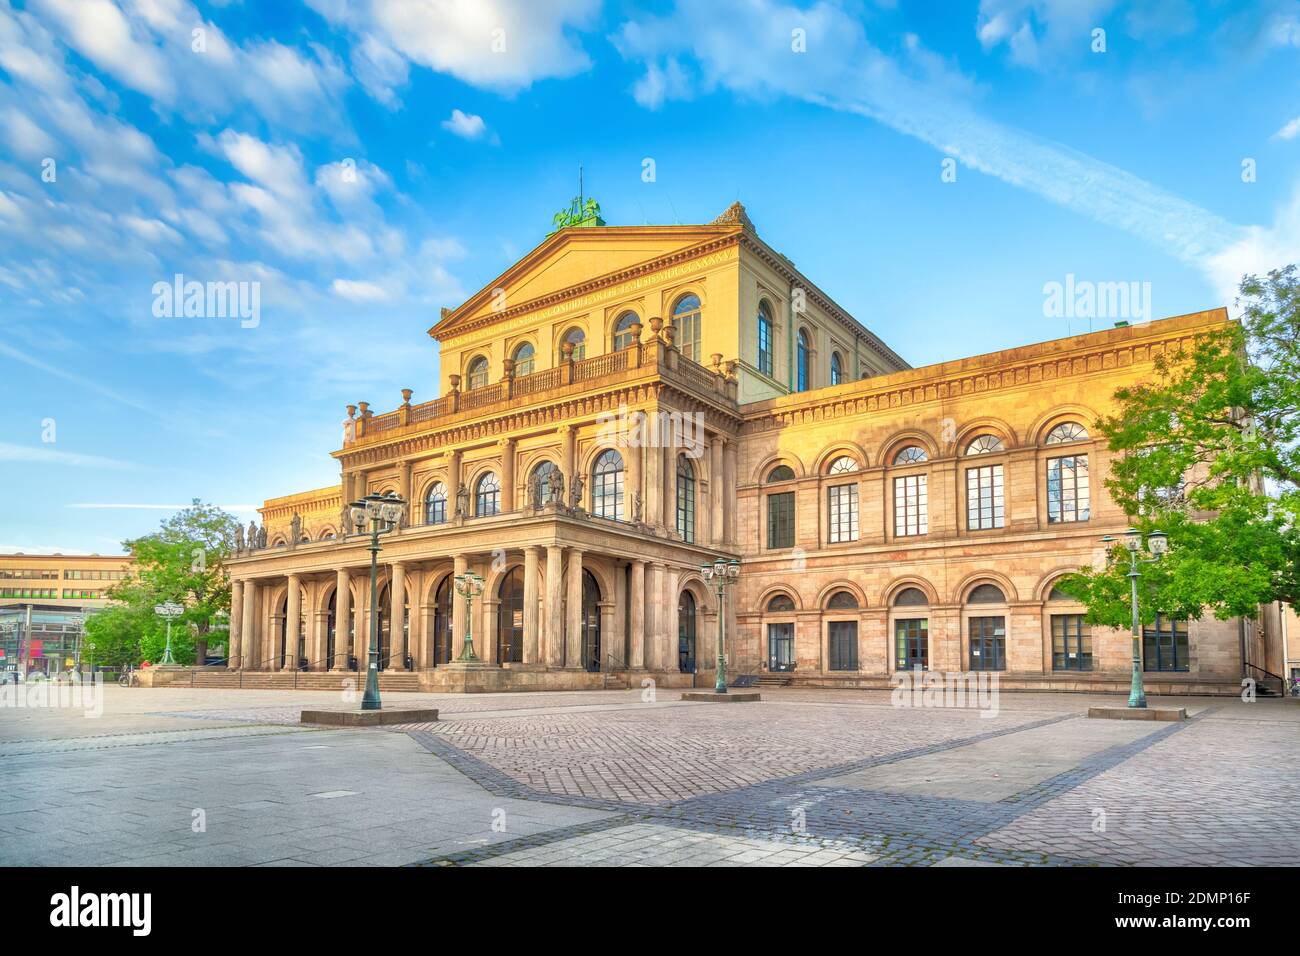 Bâtiment de l'Opéra d'Etat de Hanovre, Basse-Saxe, Allemagne (image HDR) Banque D'Images